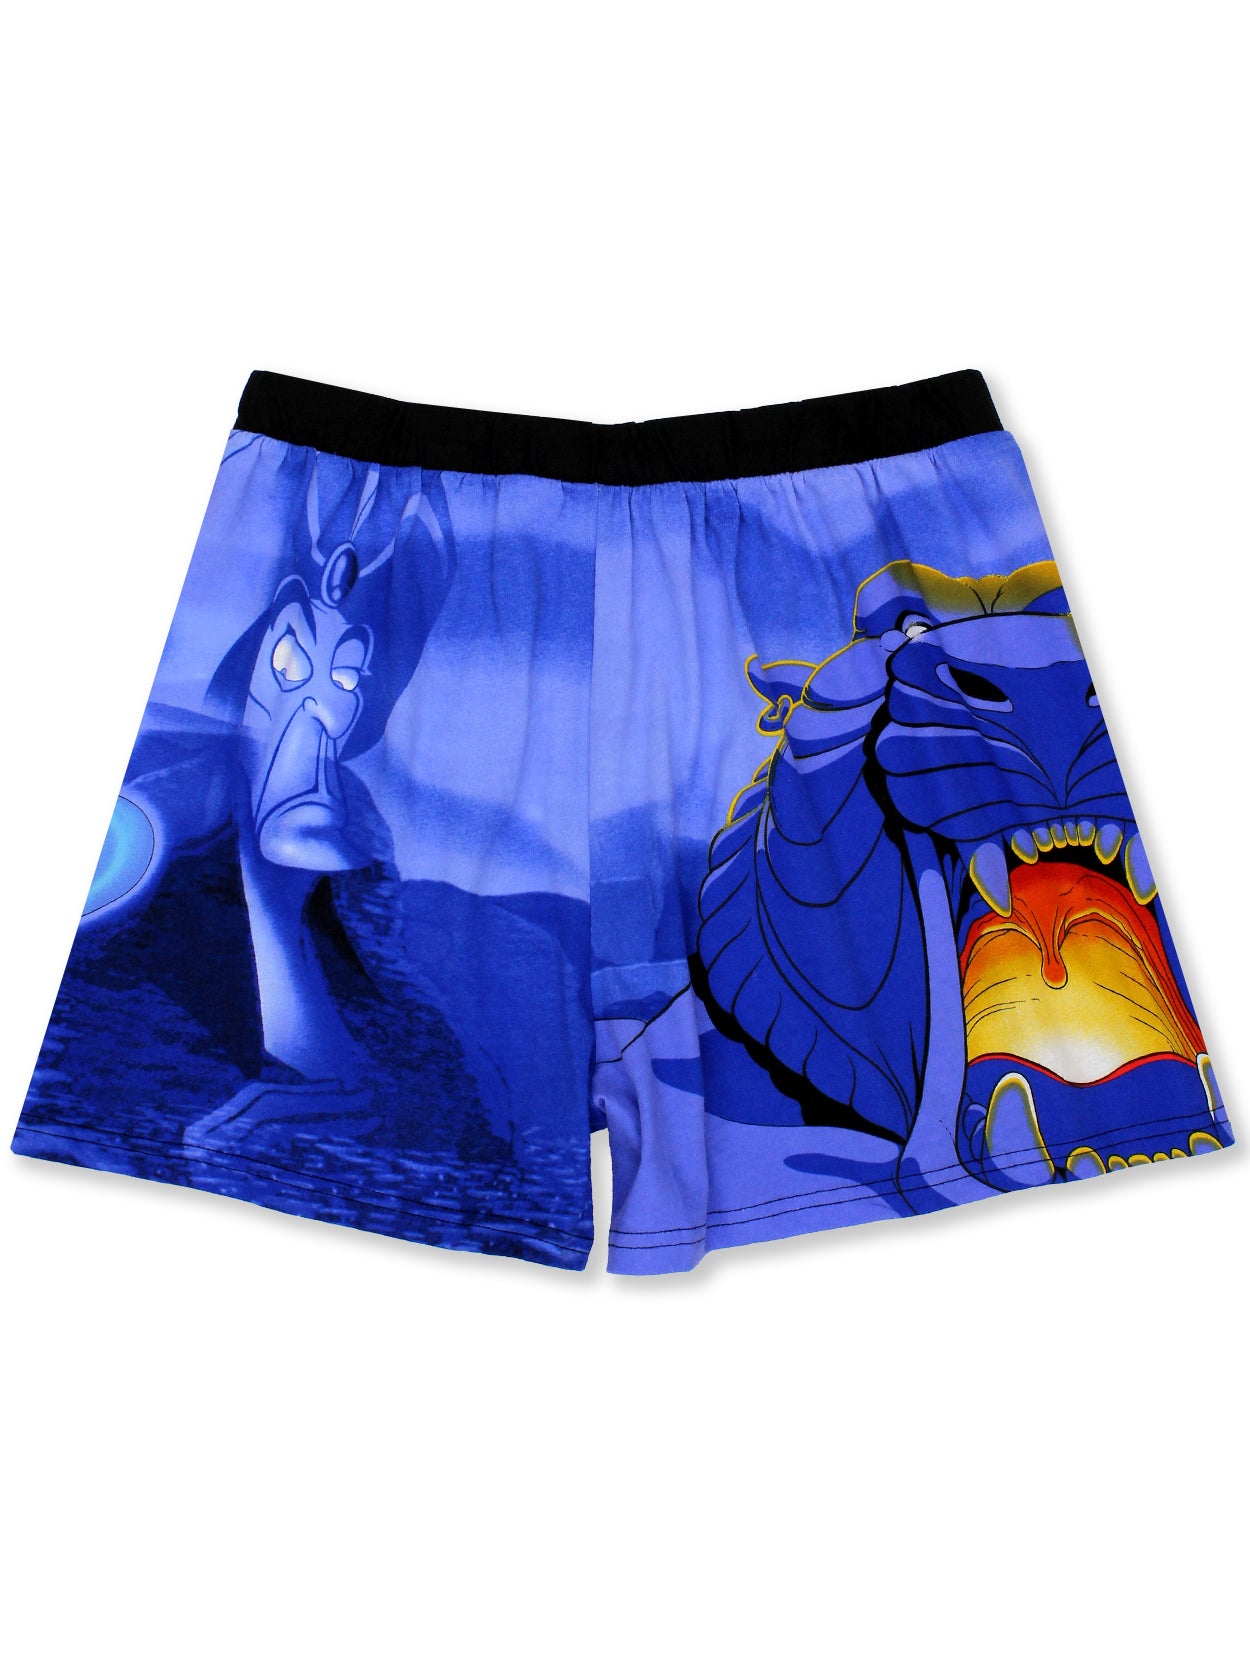 CrazyBoxer Men's Aladdin Genie Boxer Briefs Underwear Graphic 3-Pairs Blue